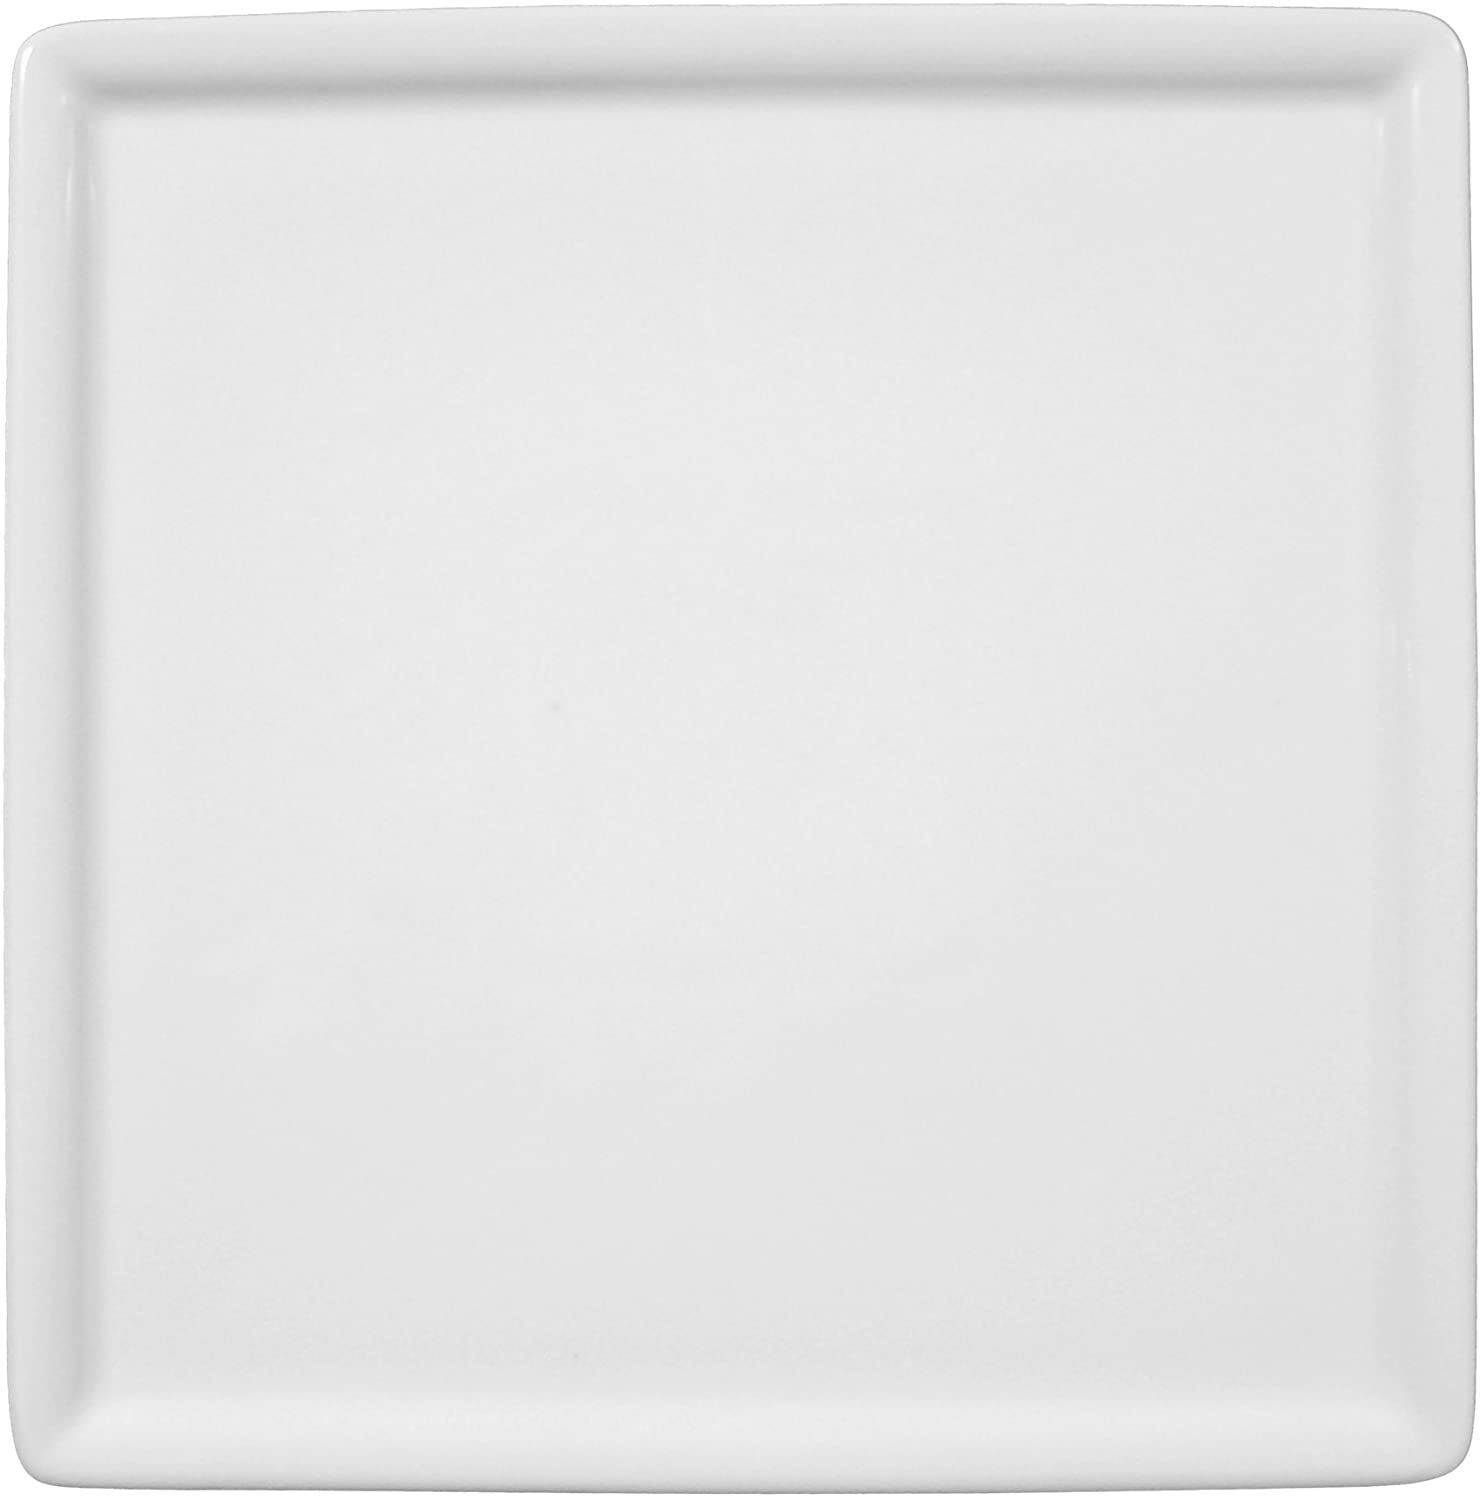 Seltmann Weiden Platte 24 cm Gourmet Buffet Server White Plain Collar